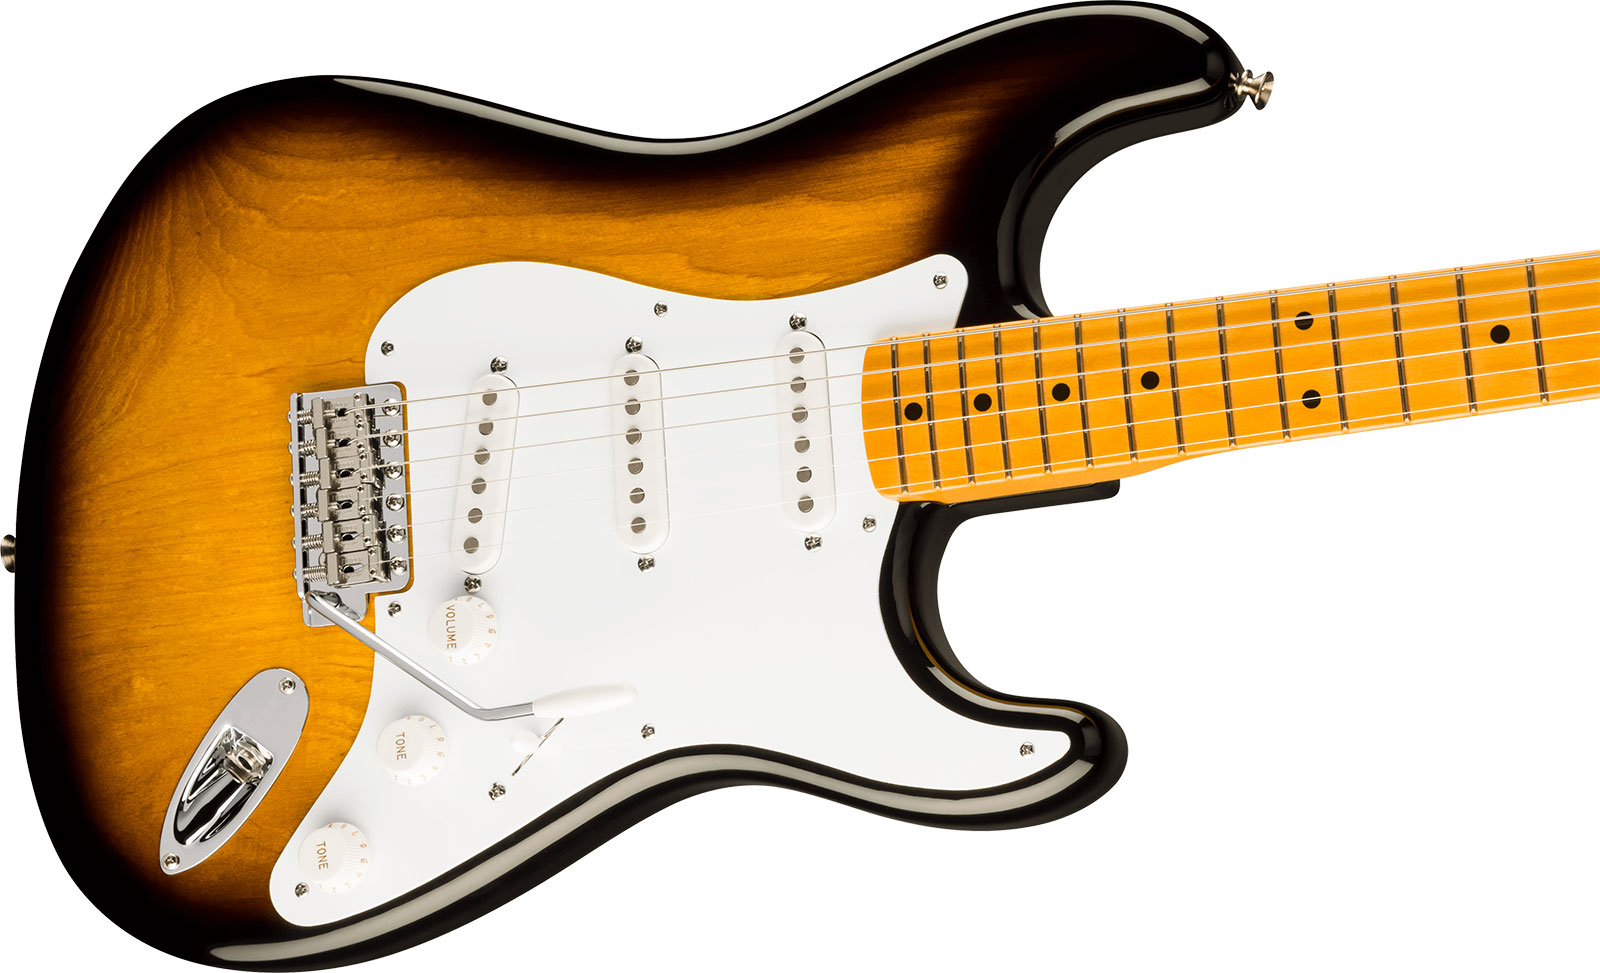 Fender Strat 1954 70th Anniversary American Vintage Ii Ltd Usa 3s Trem Mn - 2-color Sunburst - Str shape electric guitar - Variation 2